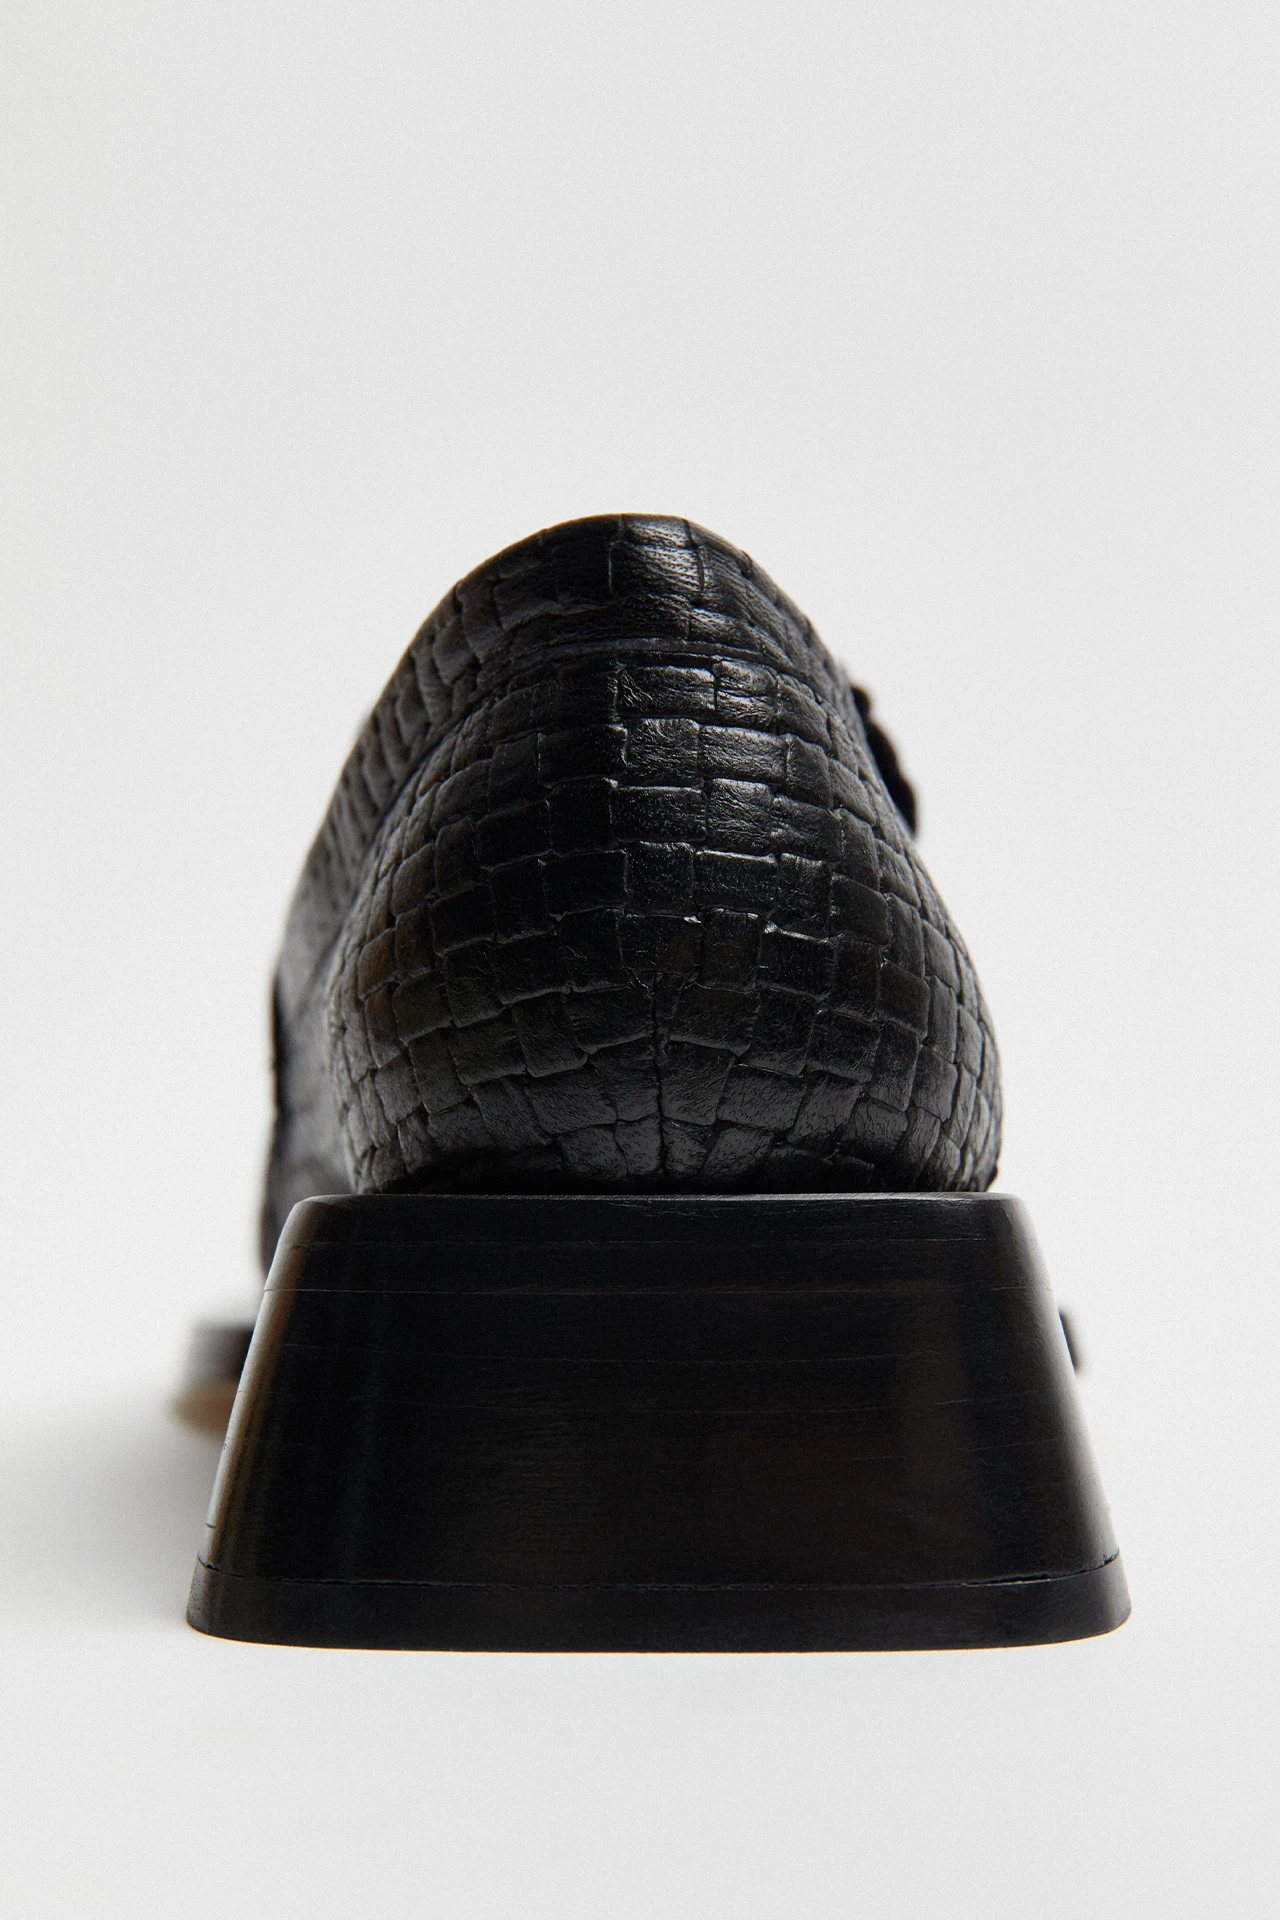 Miista-Airi-Black-Leather-Loafers-04